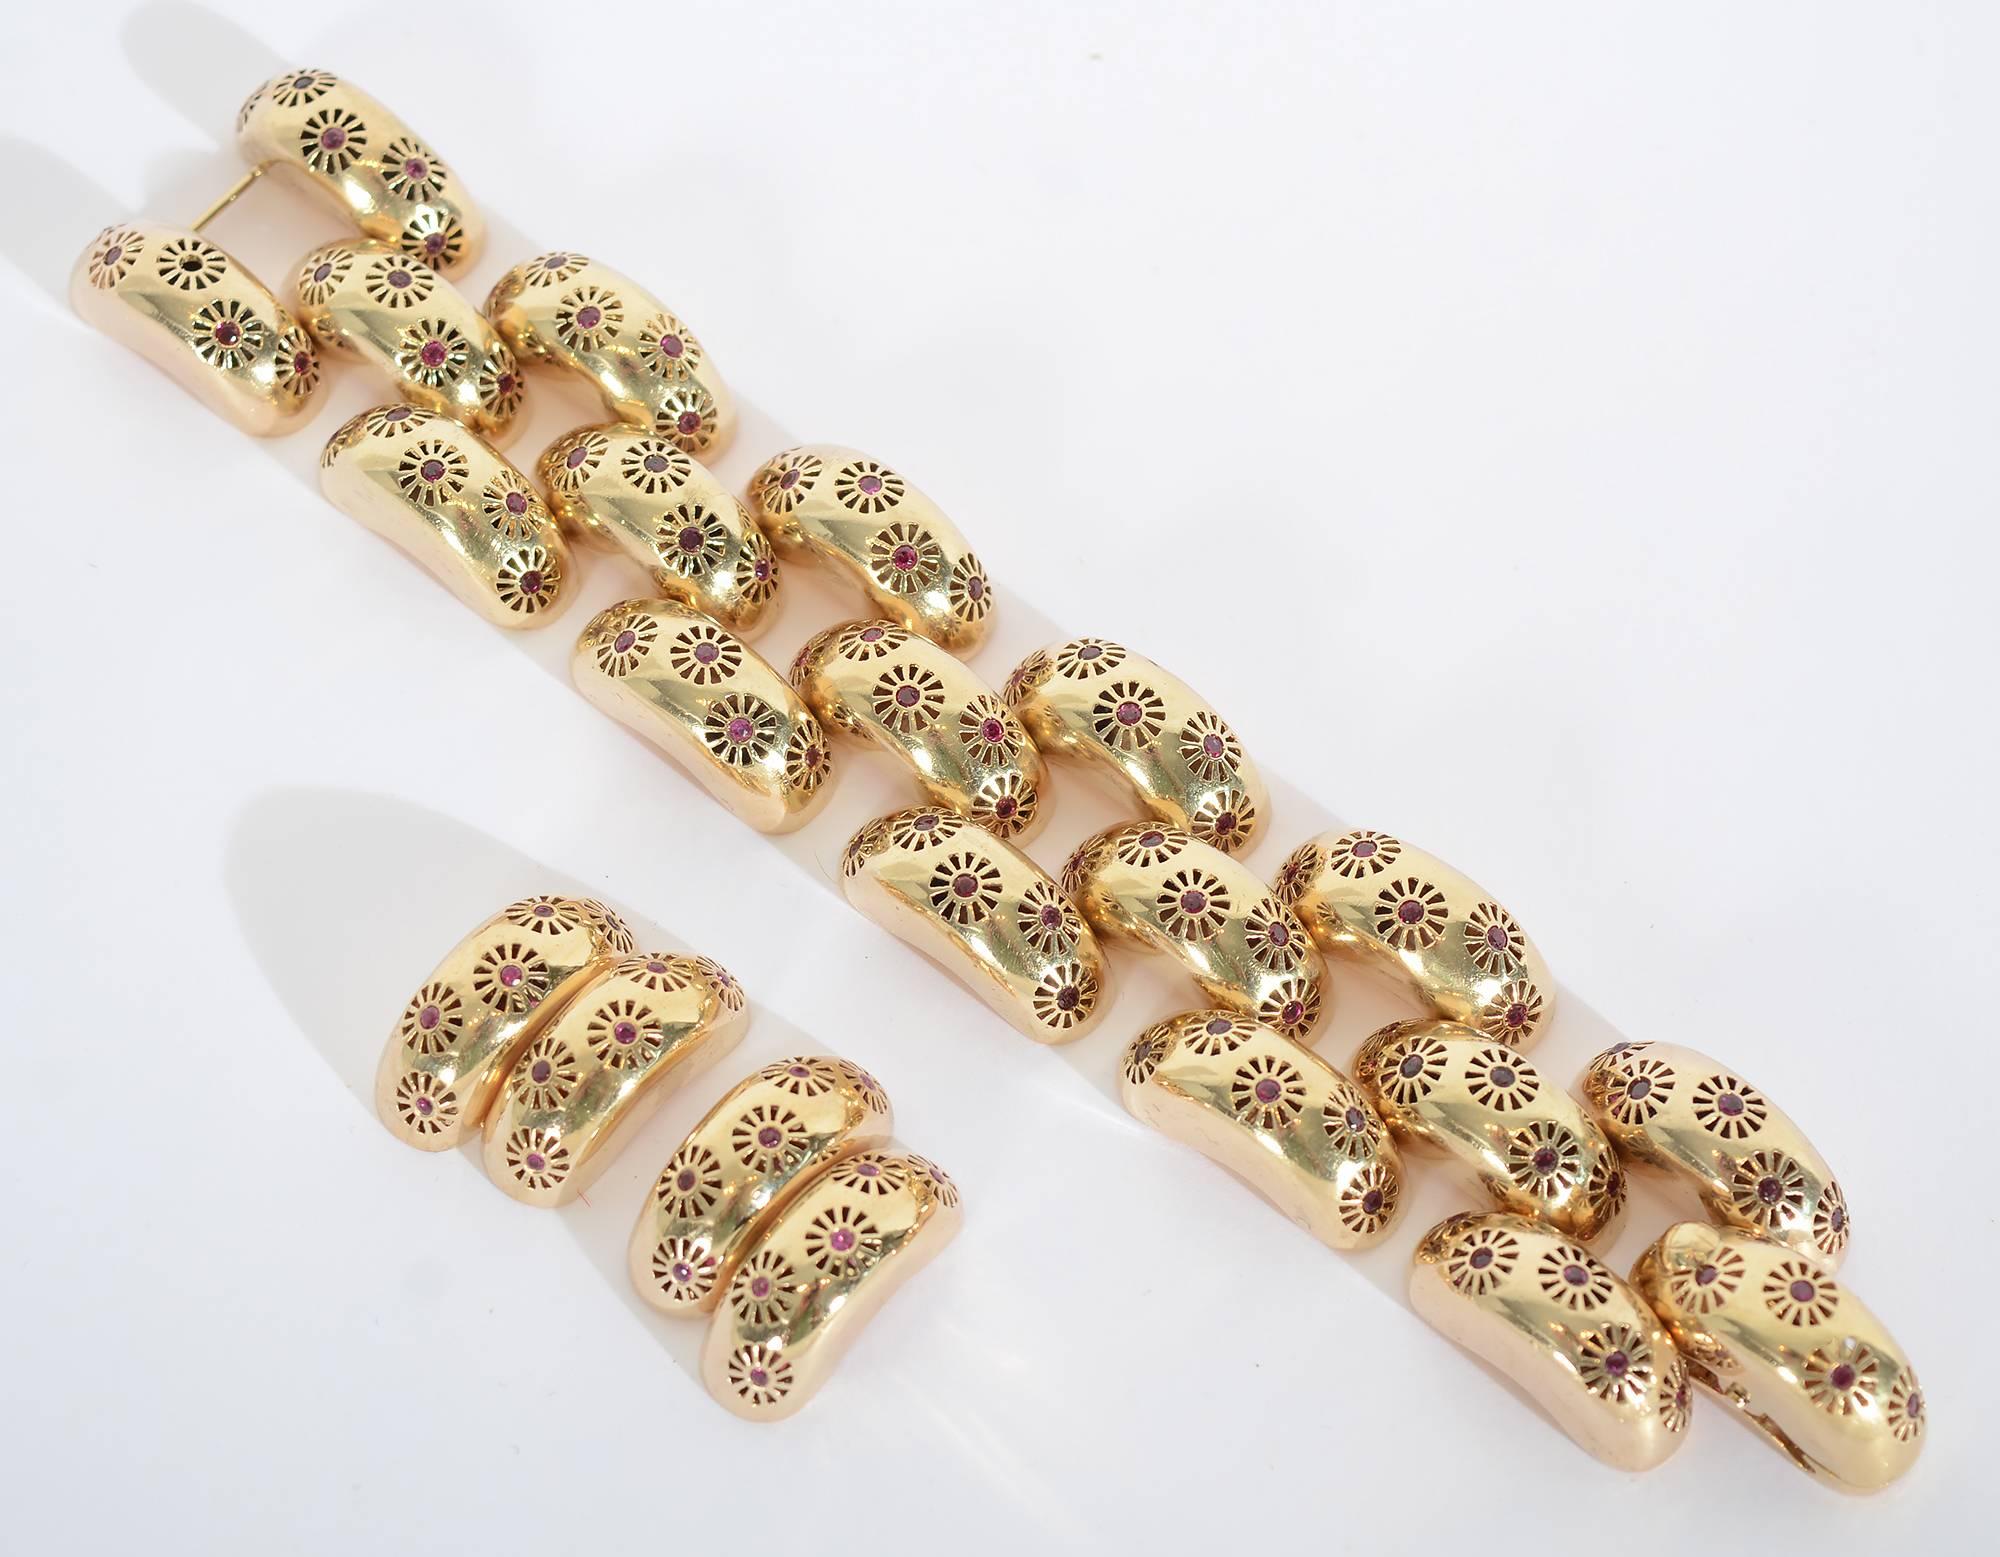 Dieses Retro-Goldarmband ist sehr ungewöhnlich, denn es hat ein rundes Design, das vollständig mit Rubinen besetzt ist. Die Glieder sind typisch für die Retro-Ära, aber die Hinzufügung des Rubinmusters hebt sie weit aus dem Rahmen des Erwarteten.